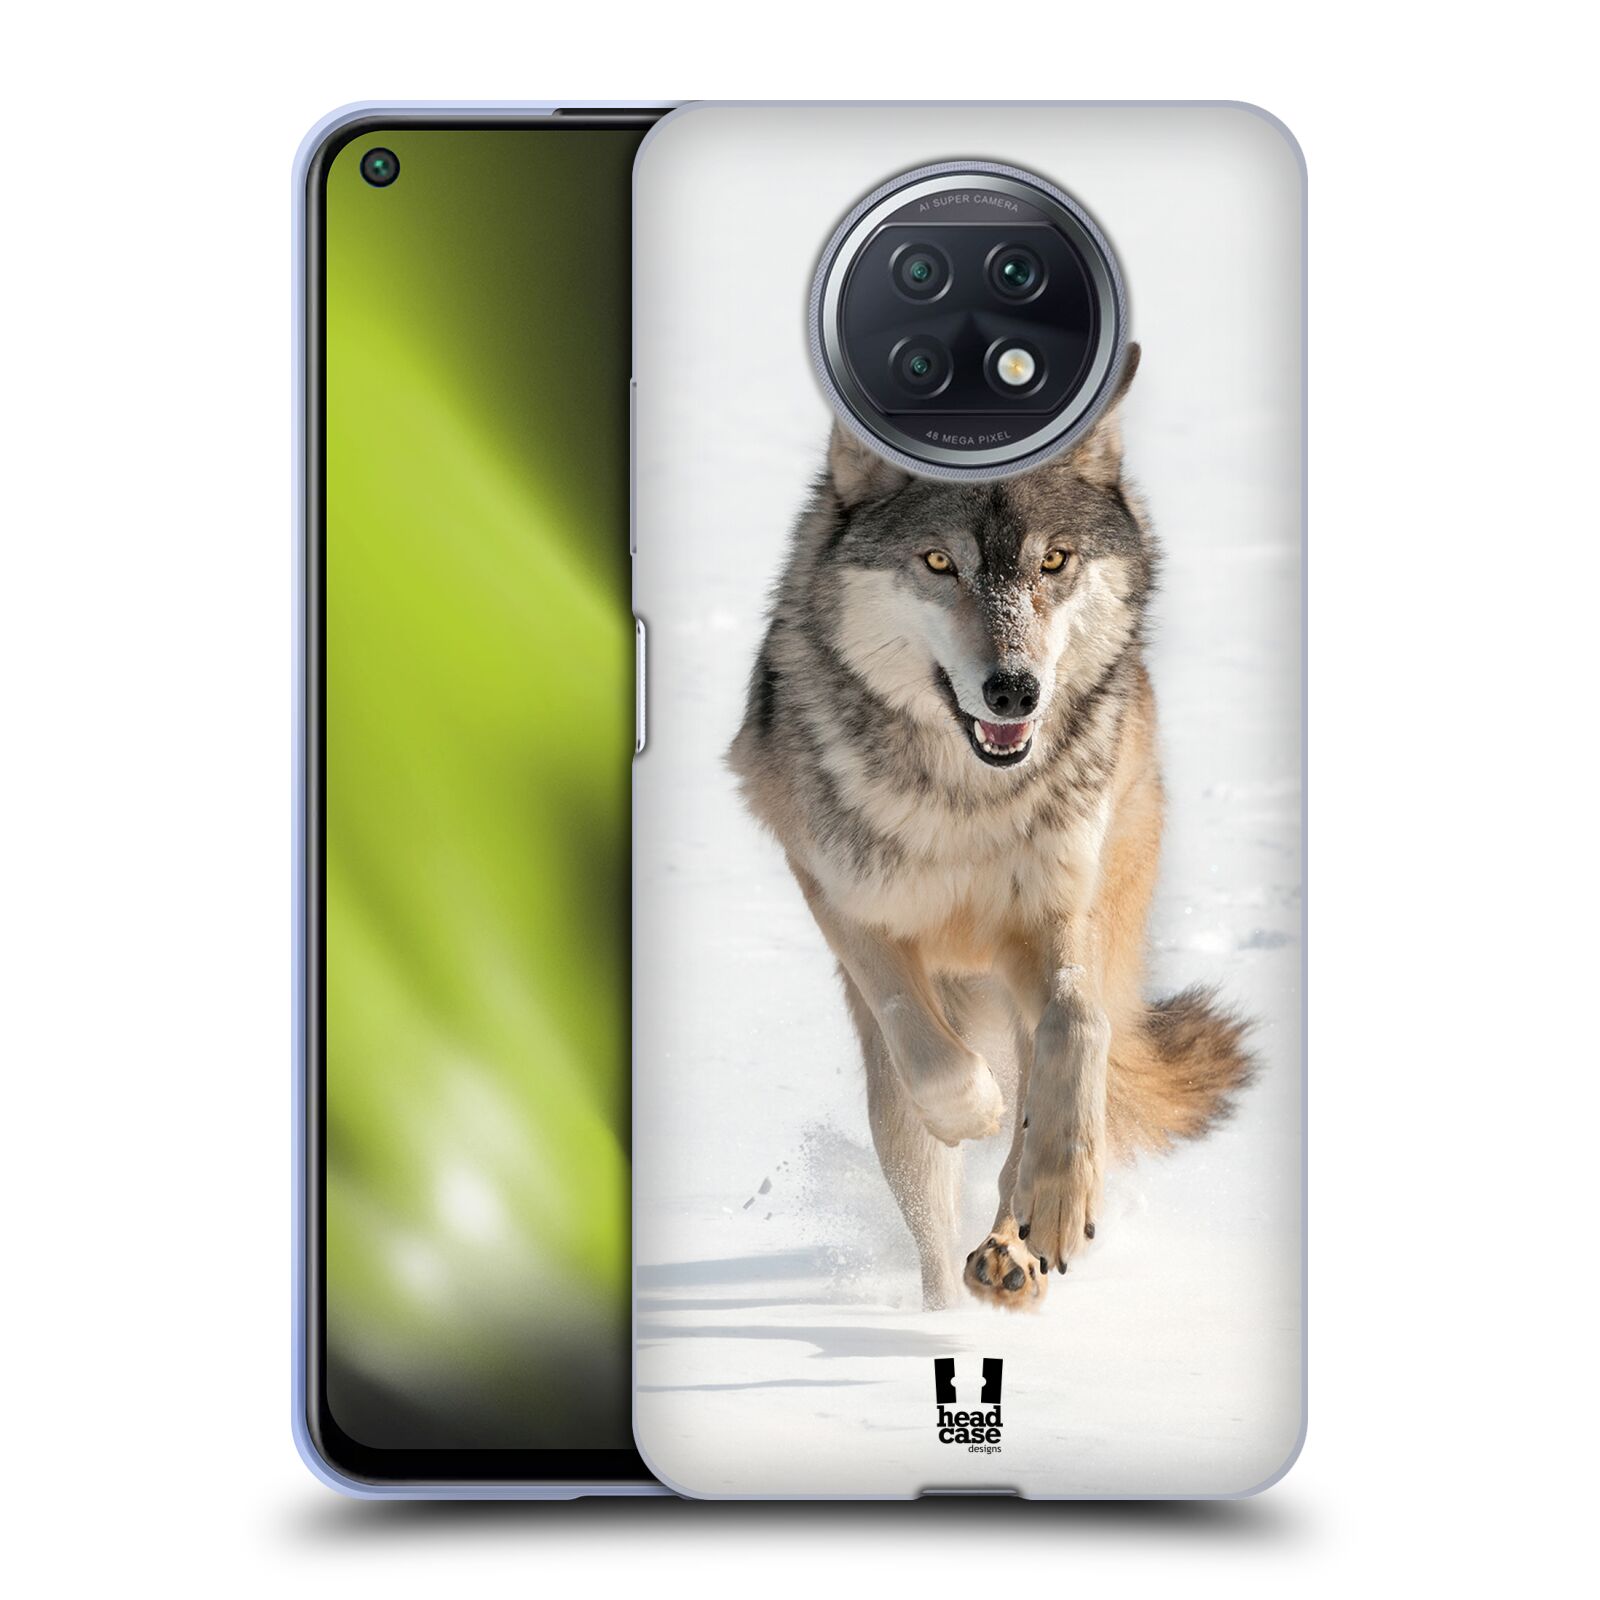 Plastový obal HEAD CASE na mobil Xiaomi Redmi Note 9T vzor Divočina, Divoký život a zvířata foto BĚŽÍCÍ VLK